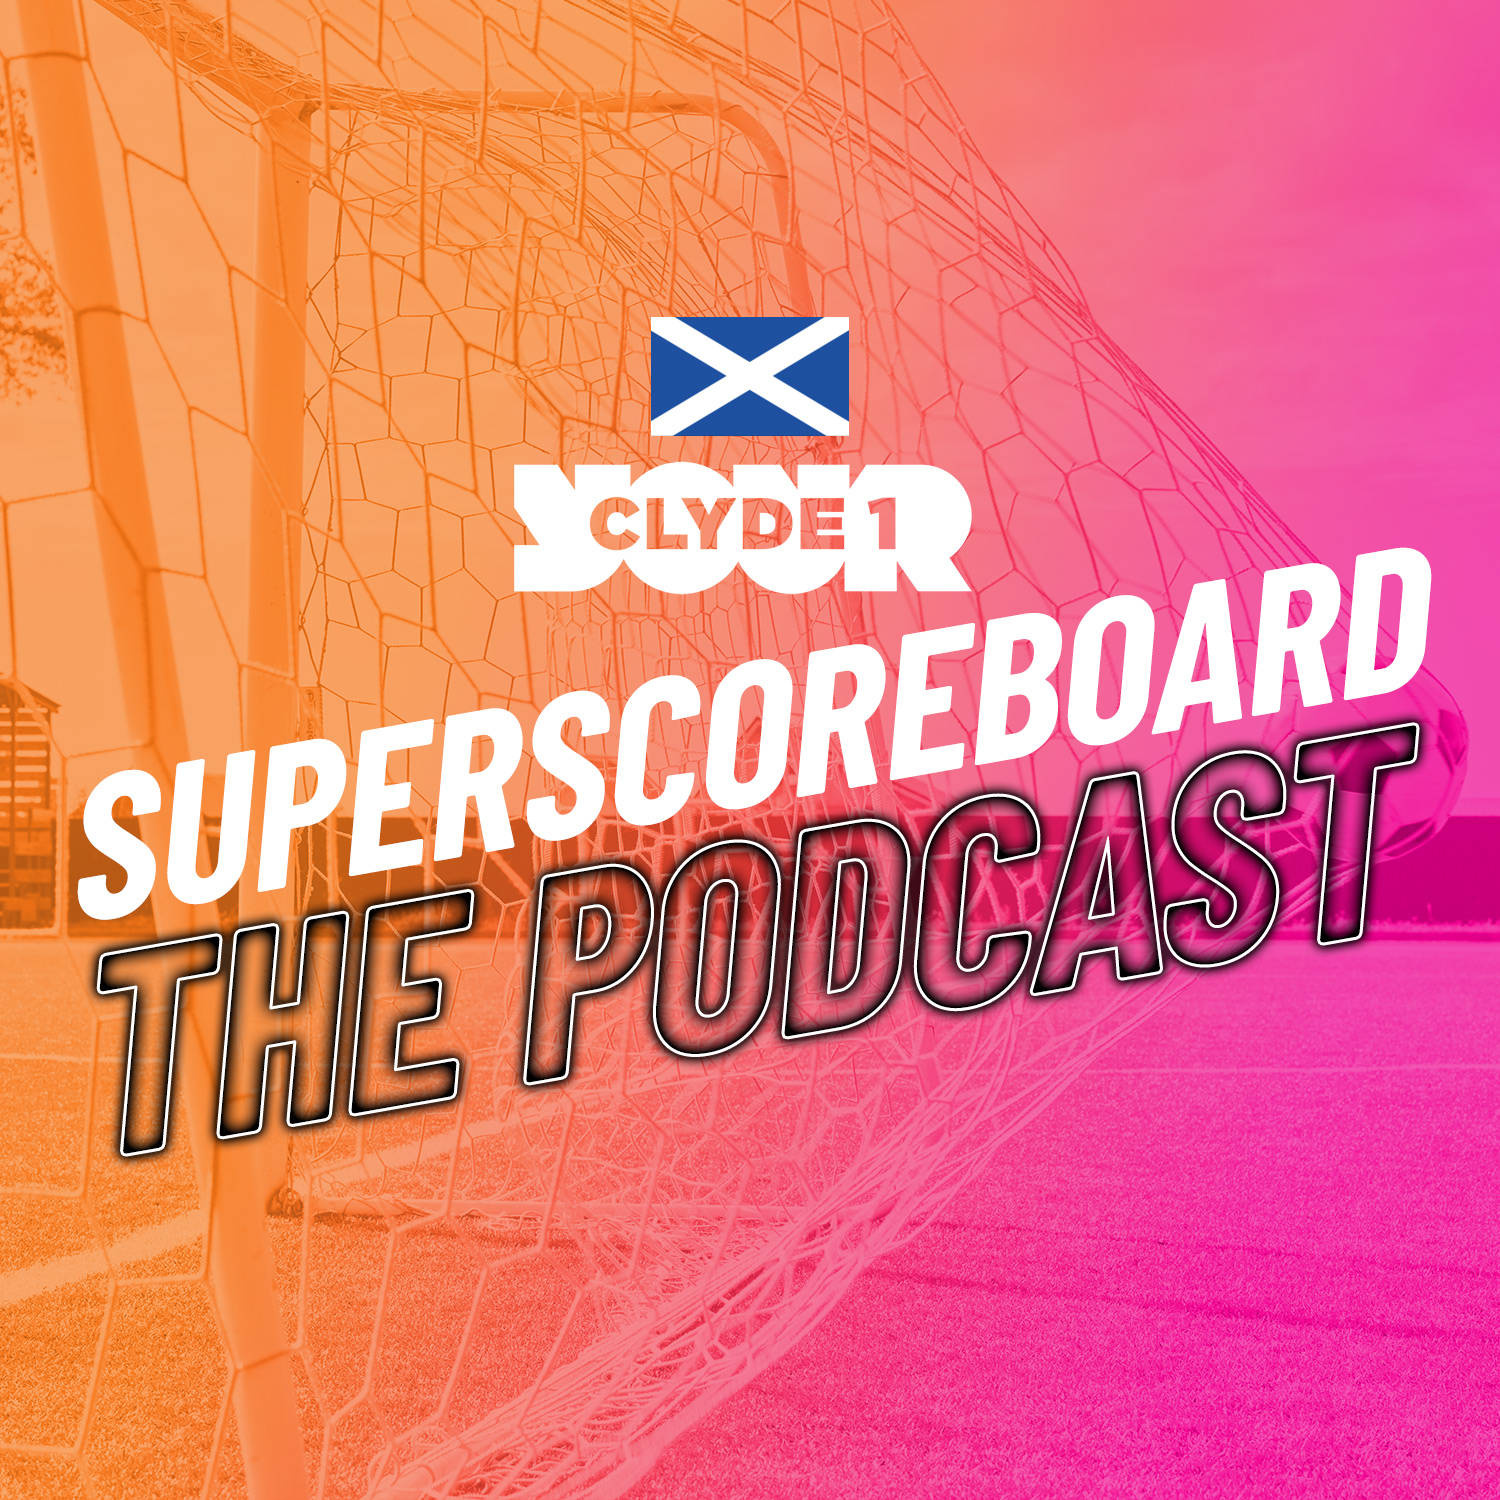 Sunday 17th December Clyde 1 Superscoreboard – Part 1